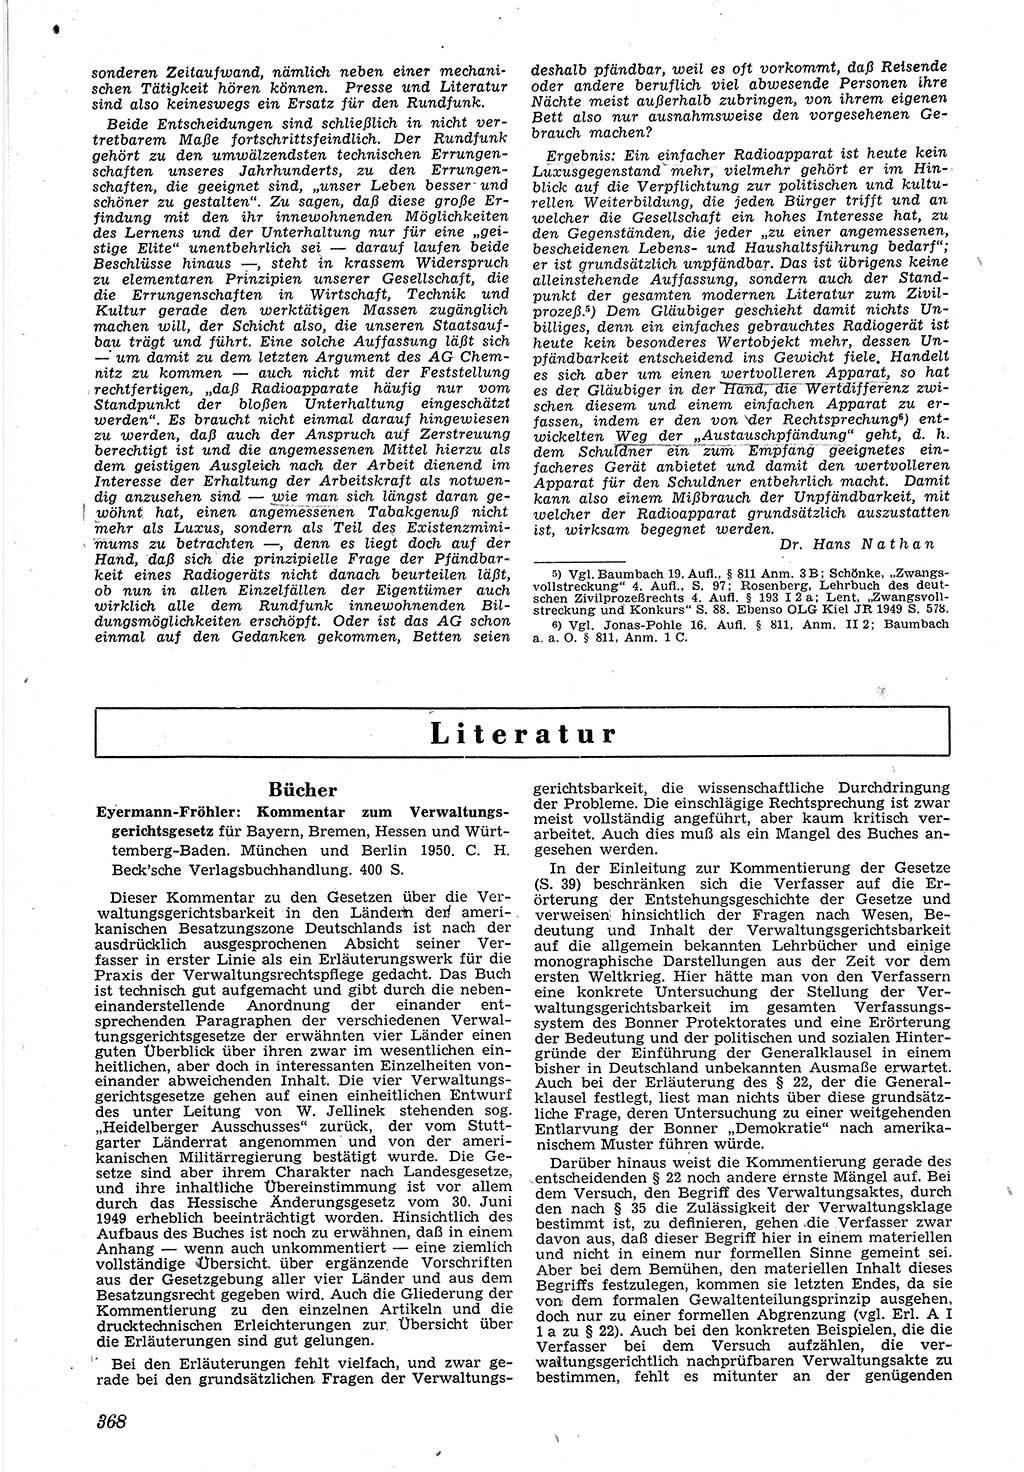 Neue Justiz (NJ), Zeitschrift für Recht und Rechtswissenschaft [Deutsche Demokratische Republik (DDR)], 4. Jahrgang 1950, Seite 368 (NJ DDR 1950, S. 368)